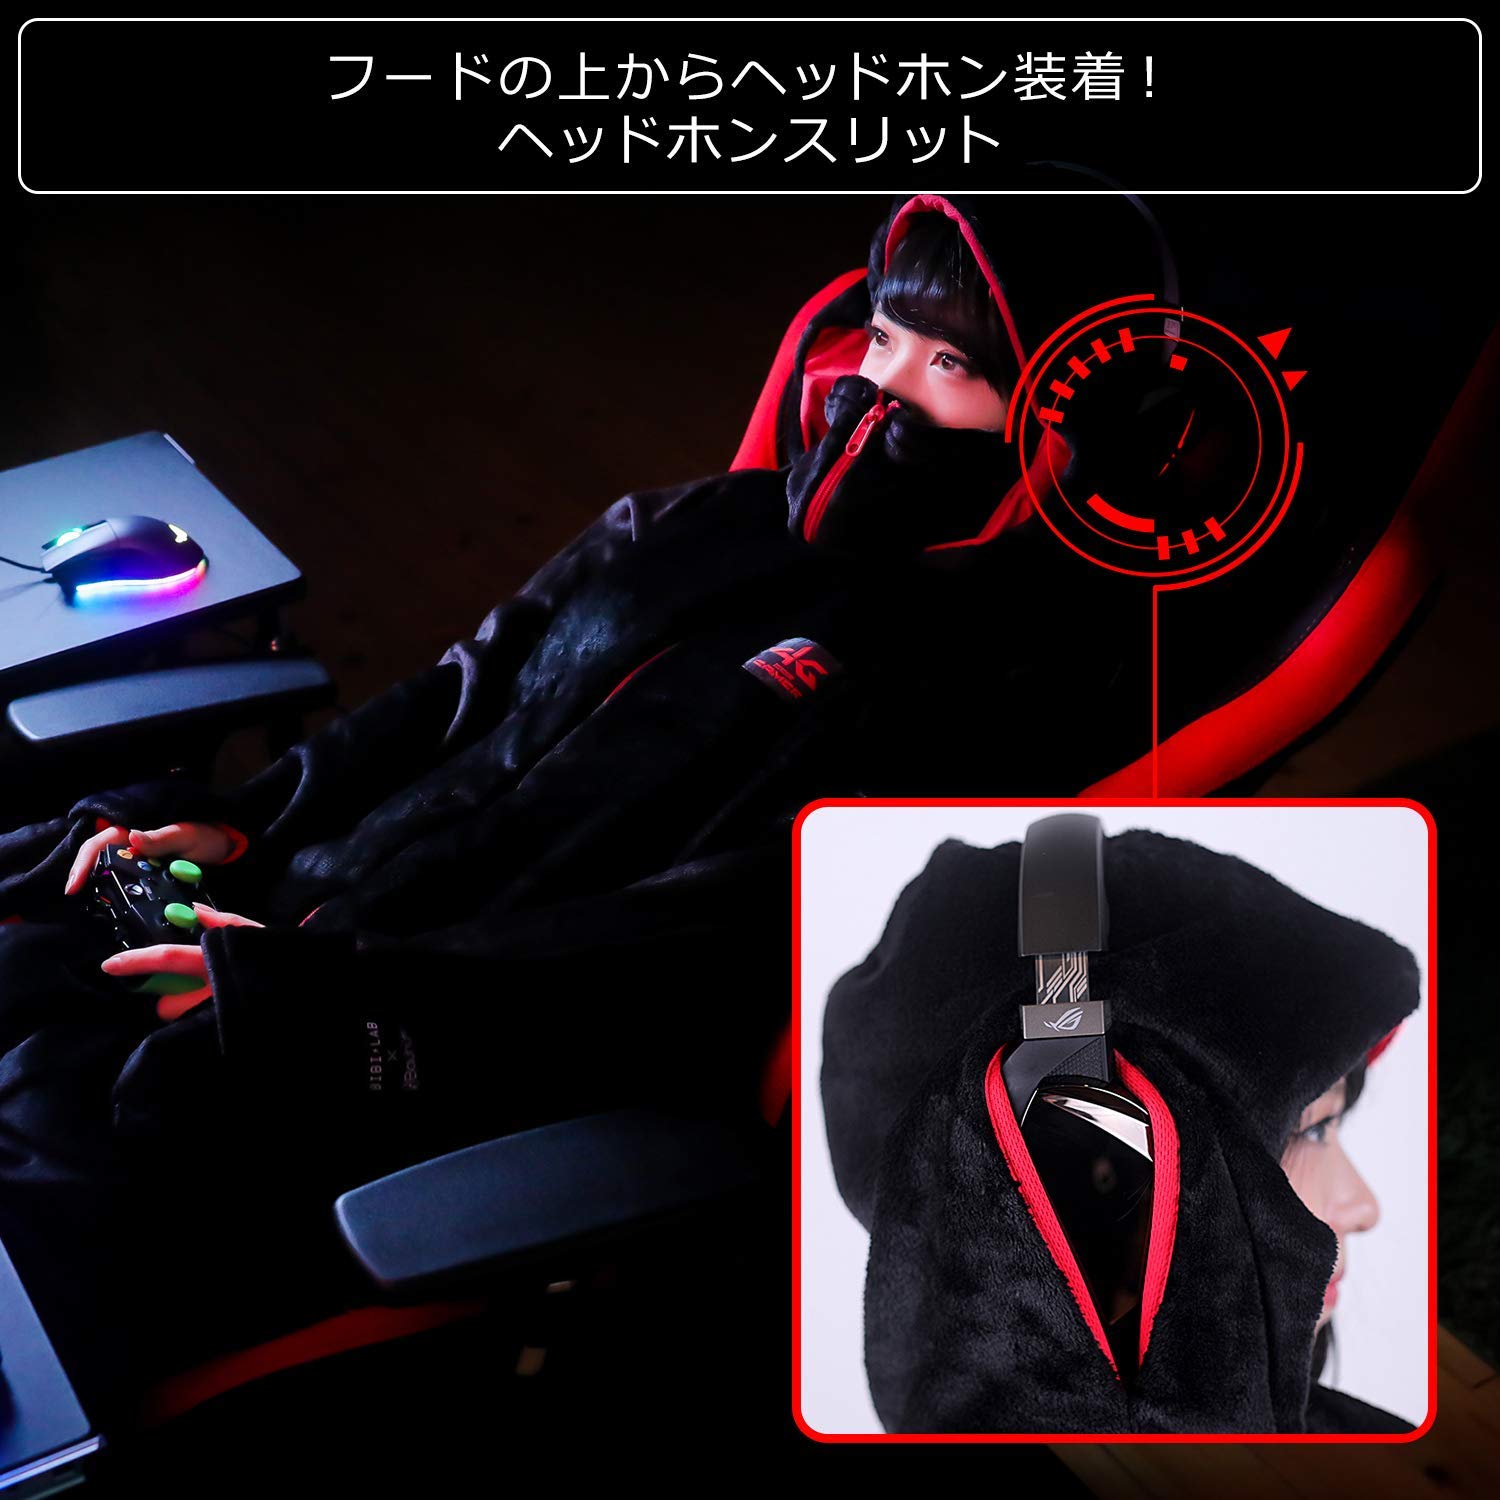 日本推出游戏玩家公用保温服 肥宅康乐衣脱实在舒坦